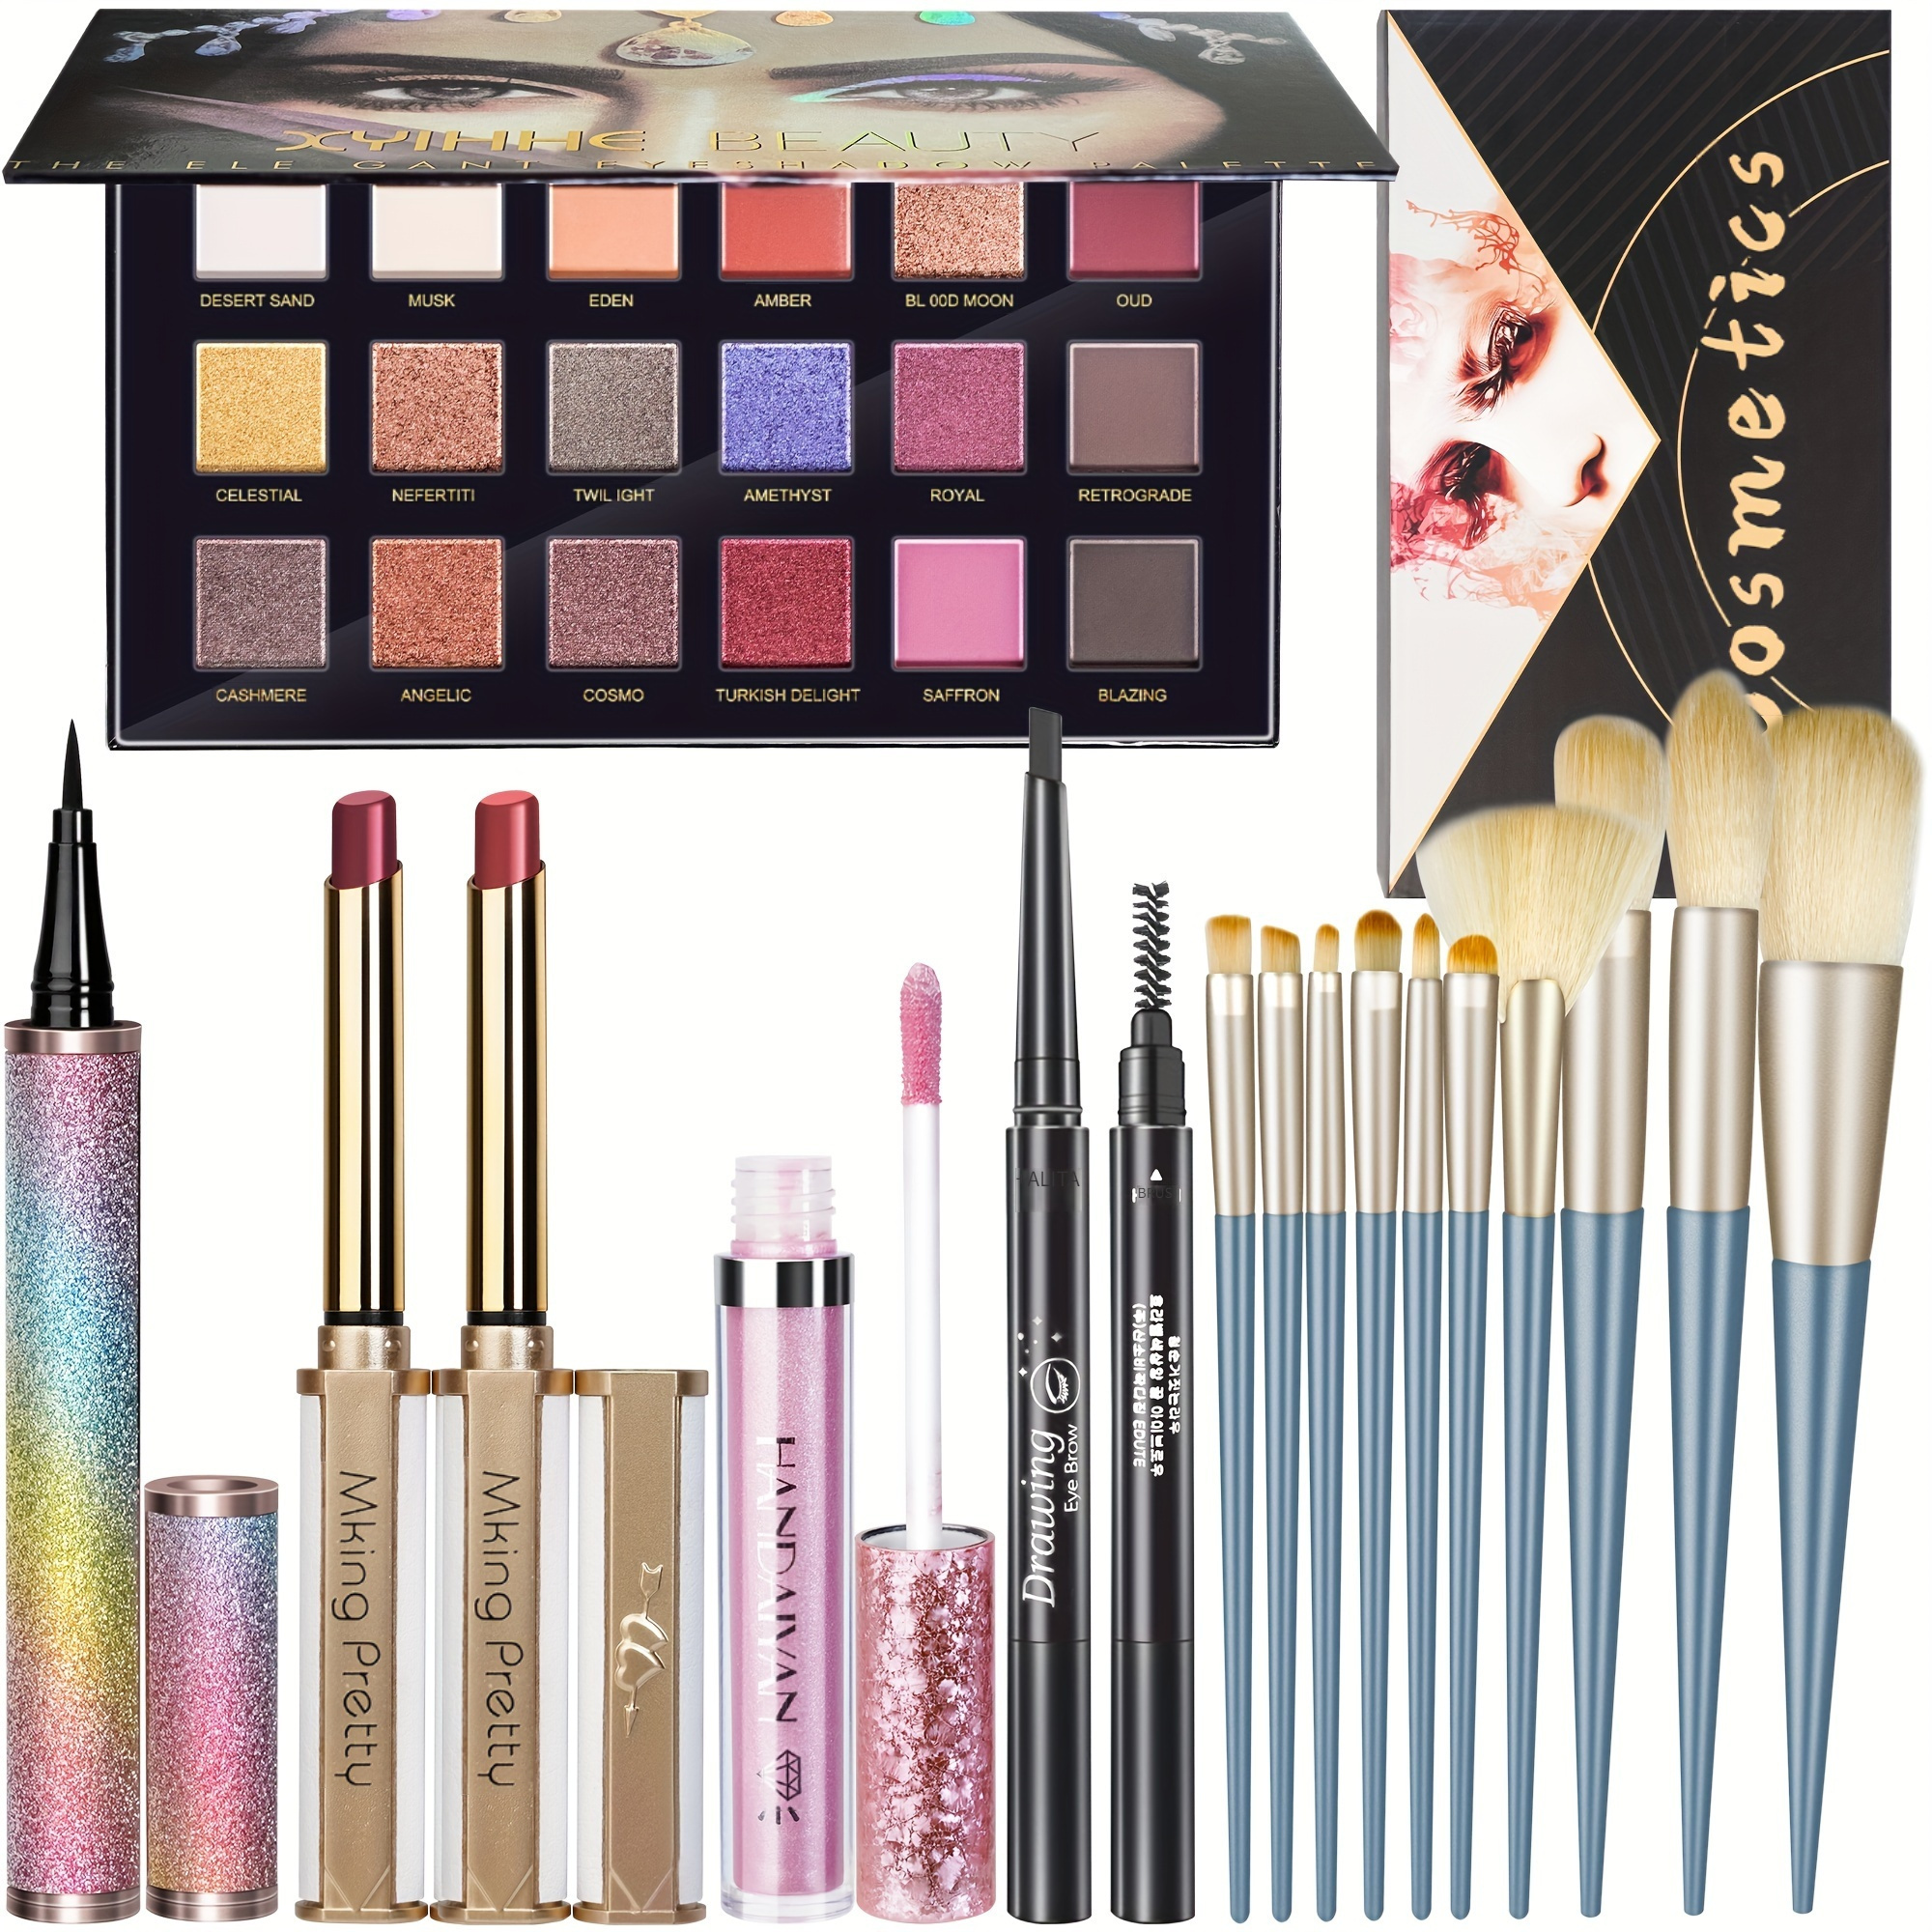  Kit completo de maquillaje para mujer, kit de maquillaje todo  en uno, incluye paleta de sombras de ojos de 12 colores y múltiples  cosméticos, juego de regalo de maquillaje para mujeres